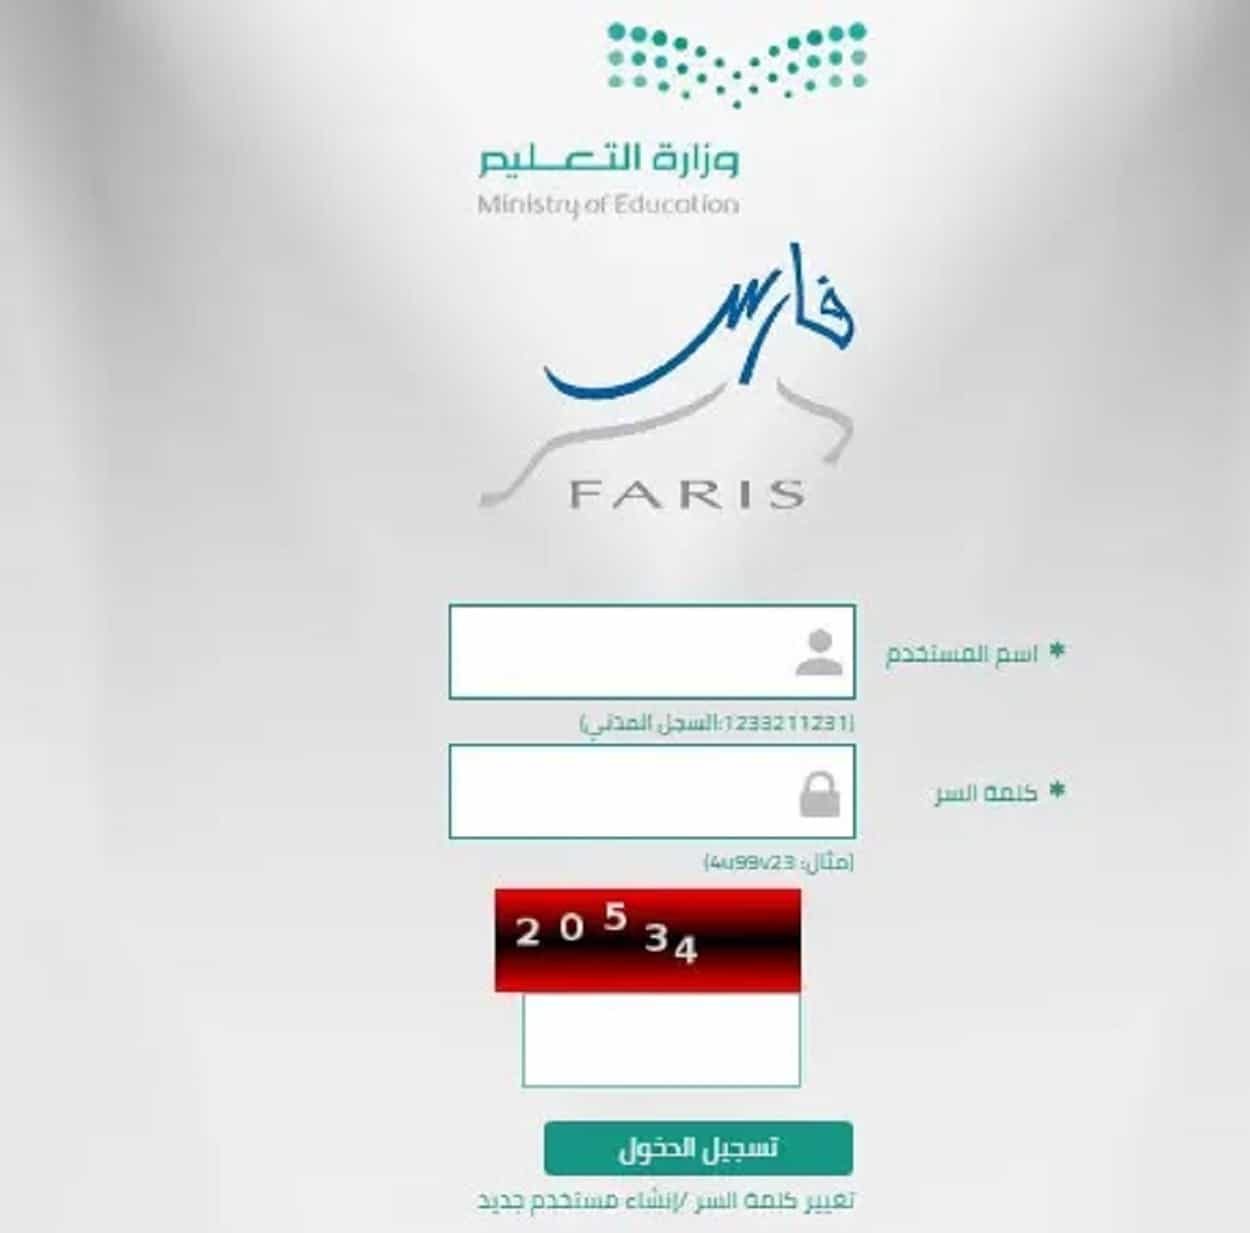 نظام فارس 1444 الرابط الجديد الرسمي للخدمة الذاتية من وزارة التعليم السعودية